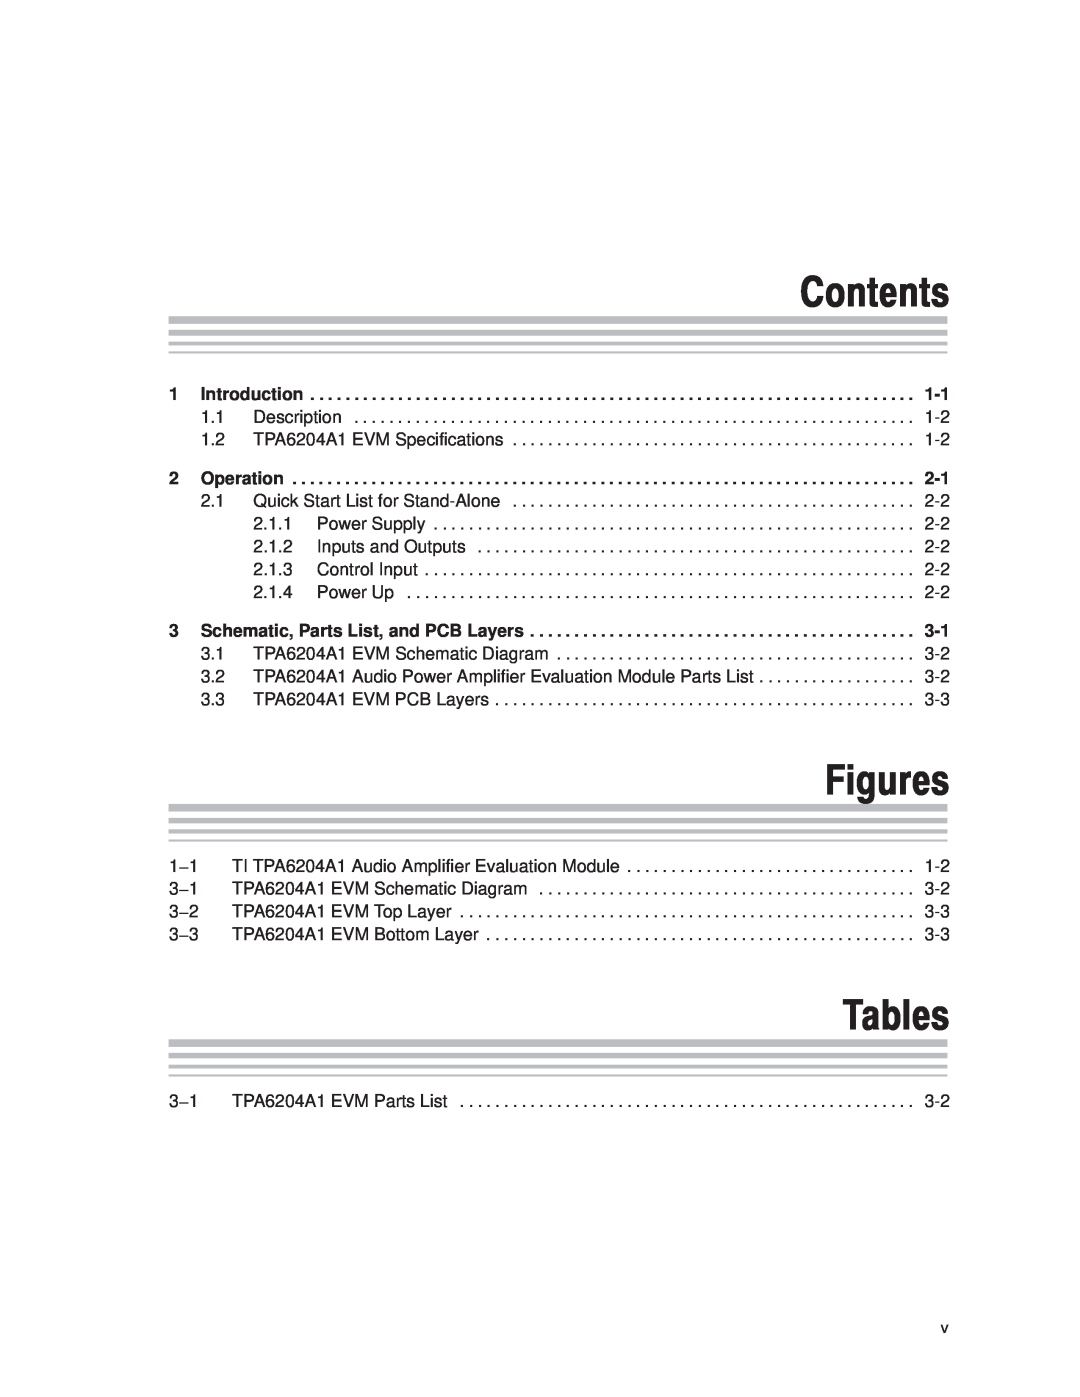 Texas Instruments TPA6204A1 manual Contents, Tables, Figures 